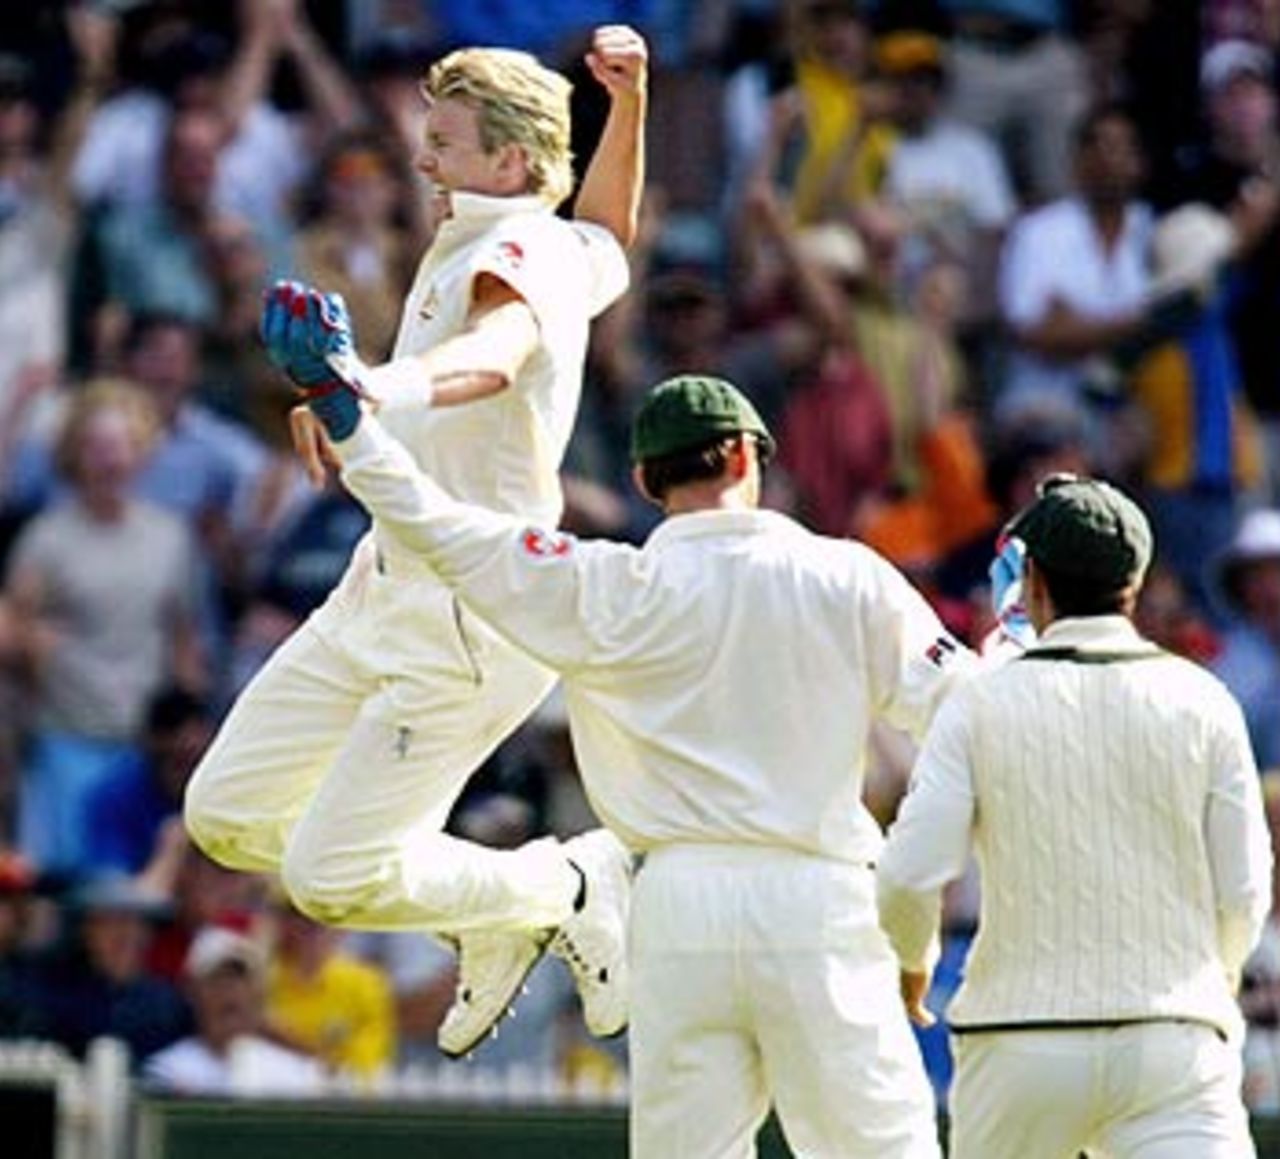 The big one. Brett Lee celebrates after dismissing Sachin Tendulkar for a duck, Australia v India, 3rd Test, Melbourne, 1st day, December 26, 2003